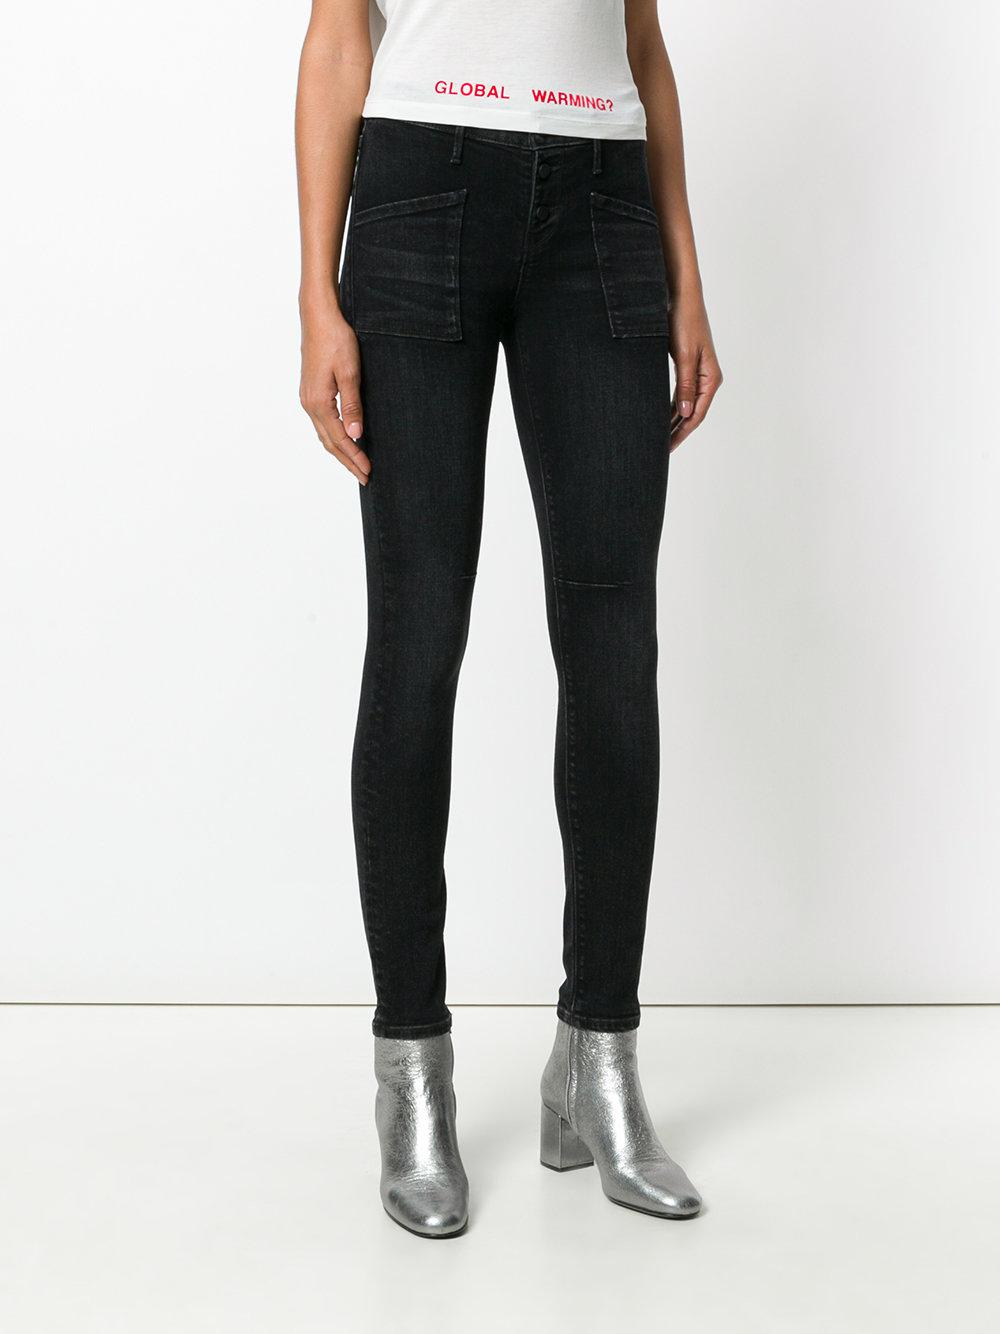 Lyst - Rta Skinny Jeans in Black